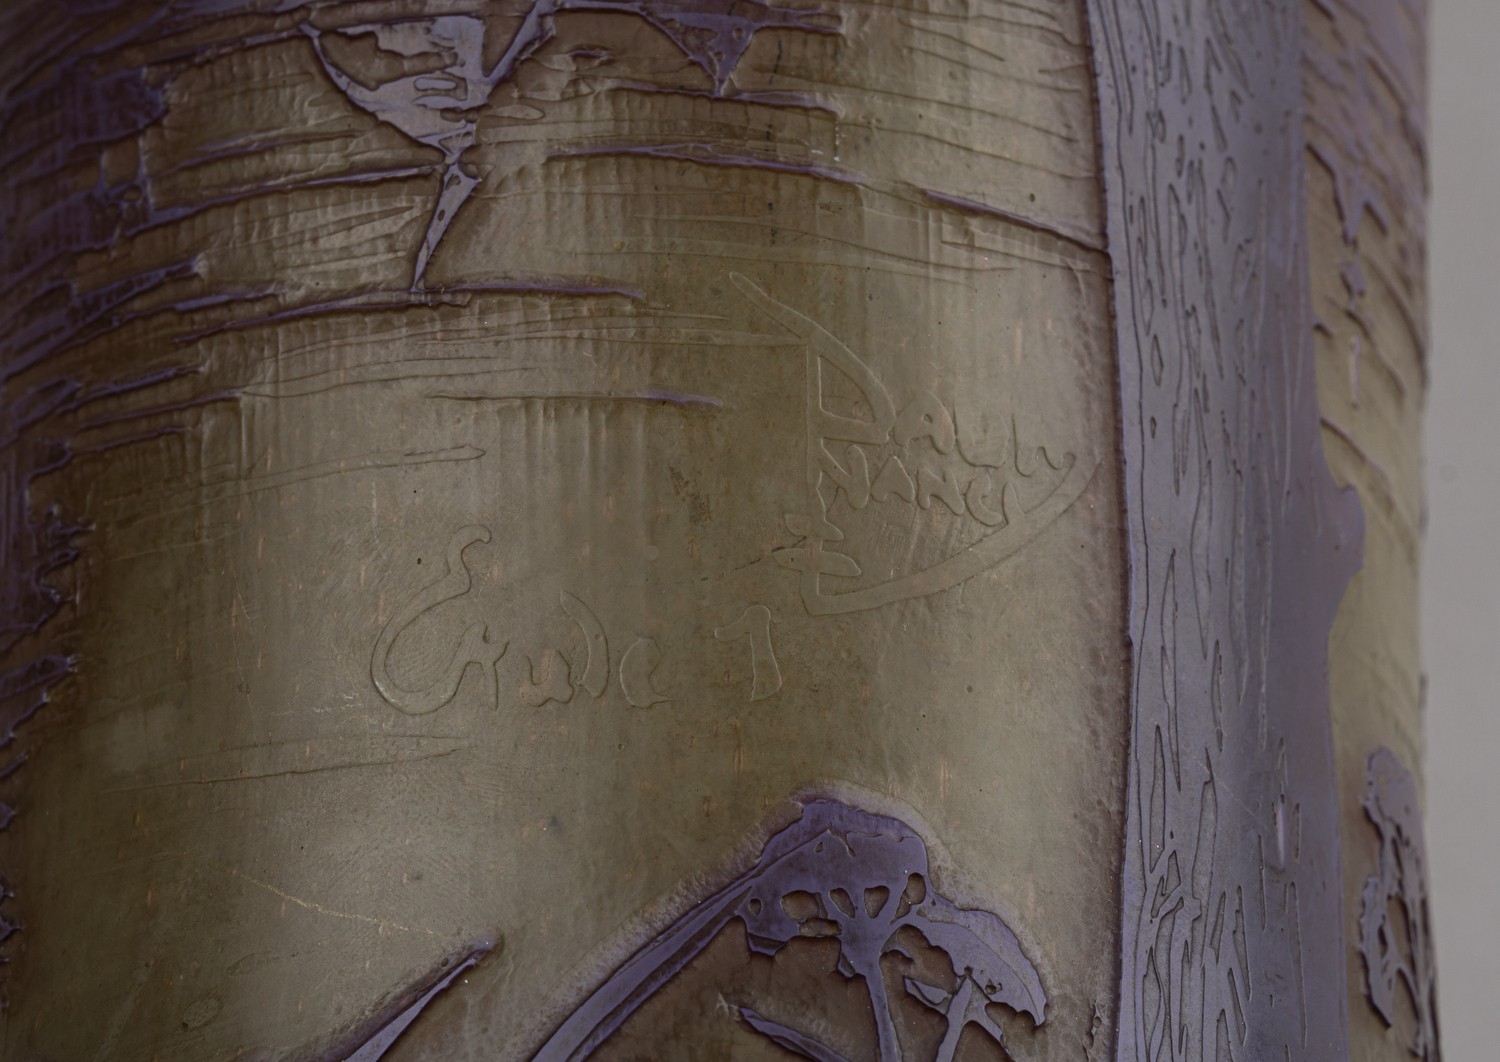 (Братья Дом /Daum. С экспертизой. Единичный экземпляр) Ваза с изображениемпейзажа с мельницами.Франция, Нанси, мануфактура «Братья Дом», 1914-1915-й годы.